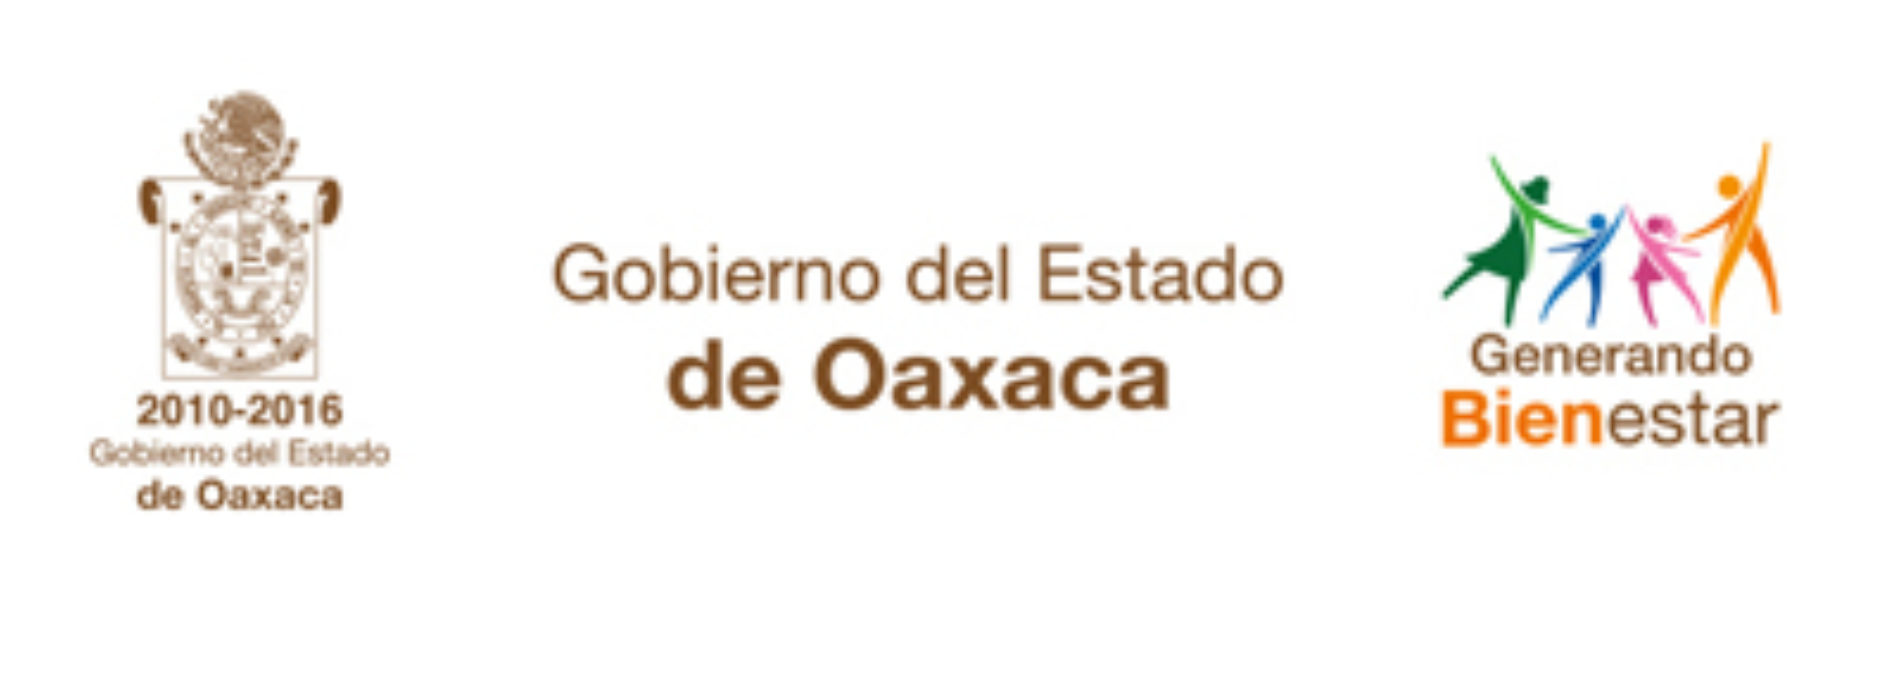 Respaldan madres y padres de familia acciones del Gobierno para garantizar el Estado de Derecho en Oaxaca